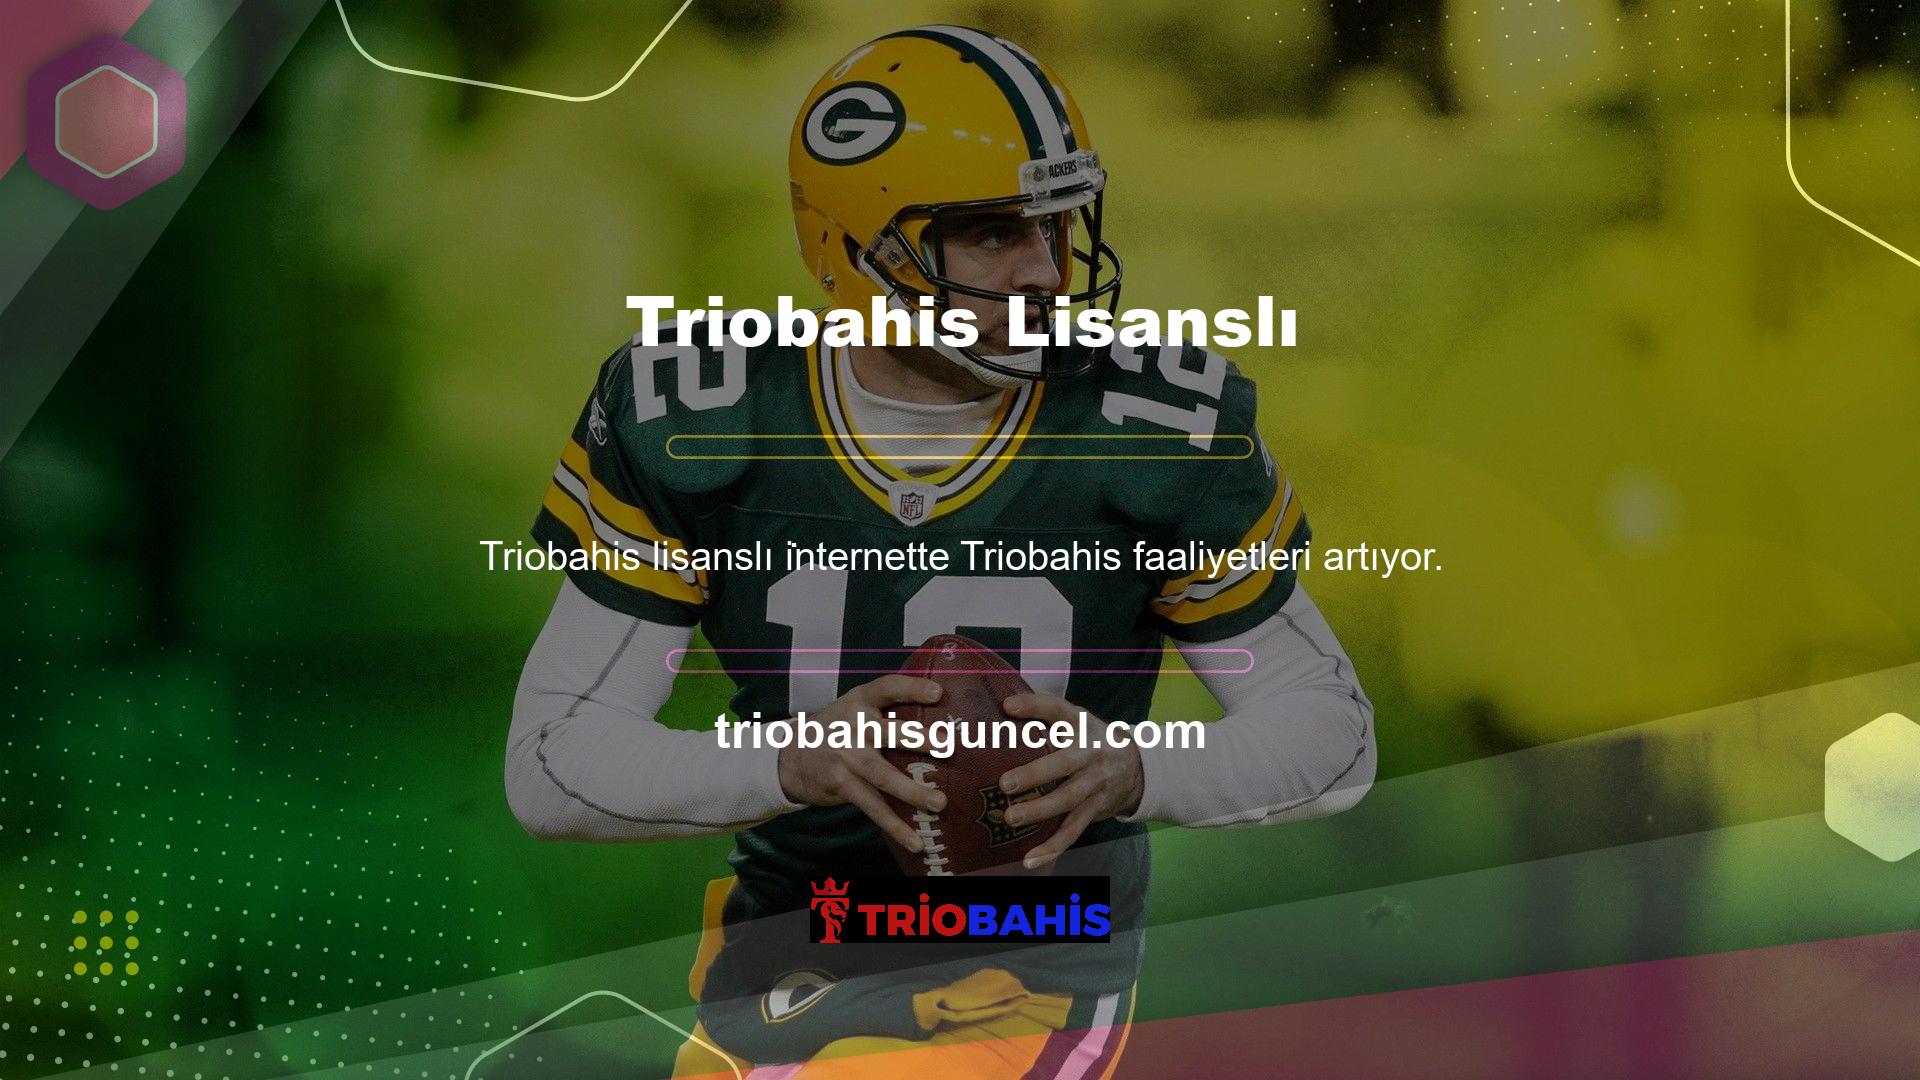 Kullanıcıların dikkatini çeken oyun şirketlerinden biri de Triobahis platformudur